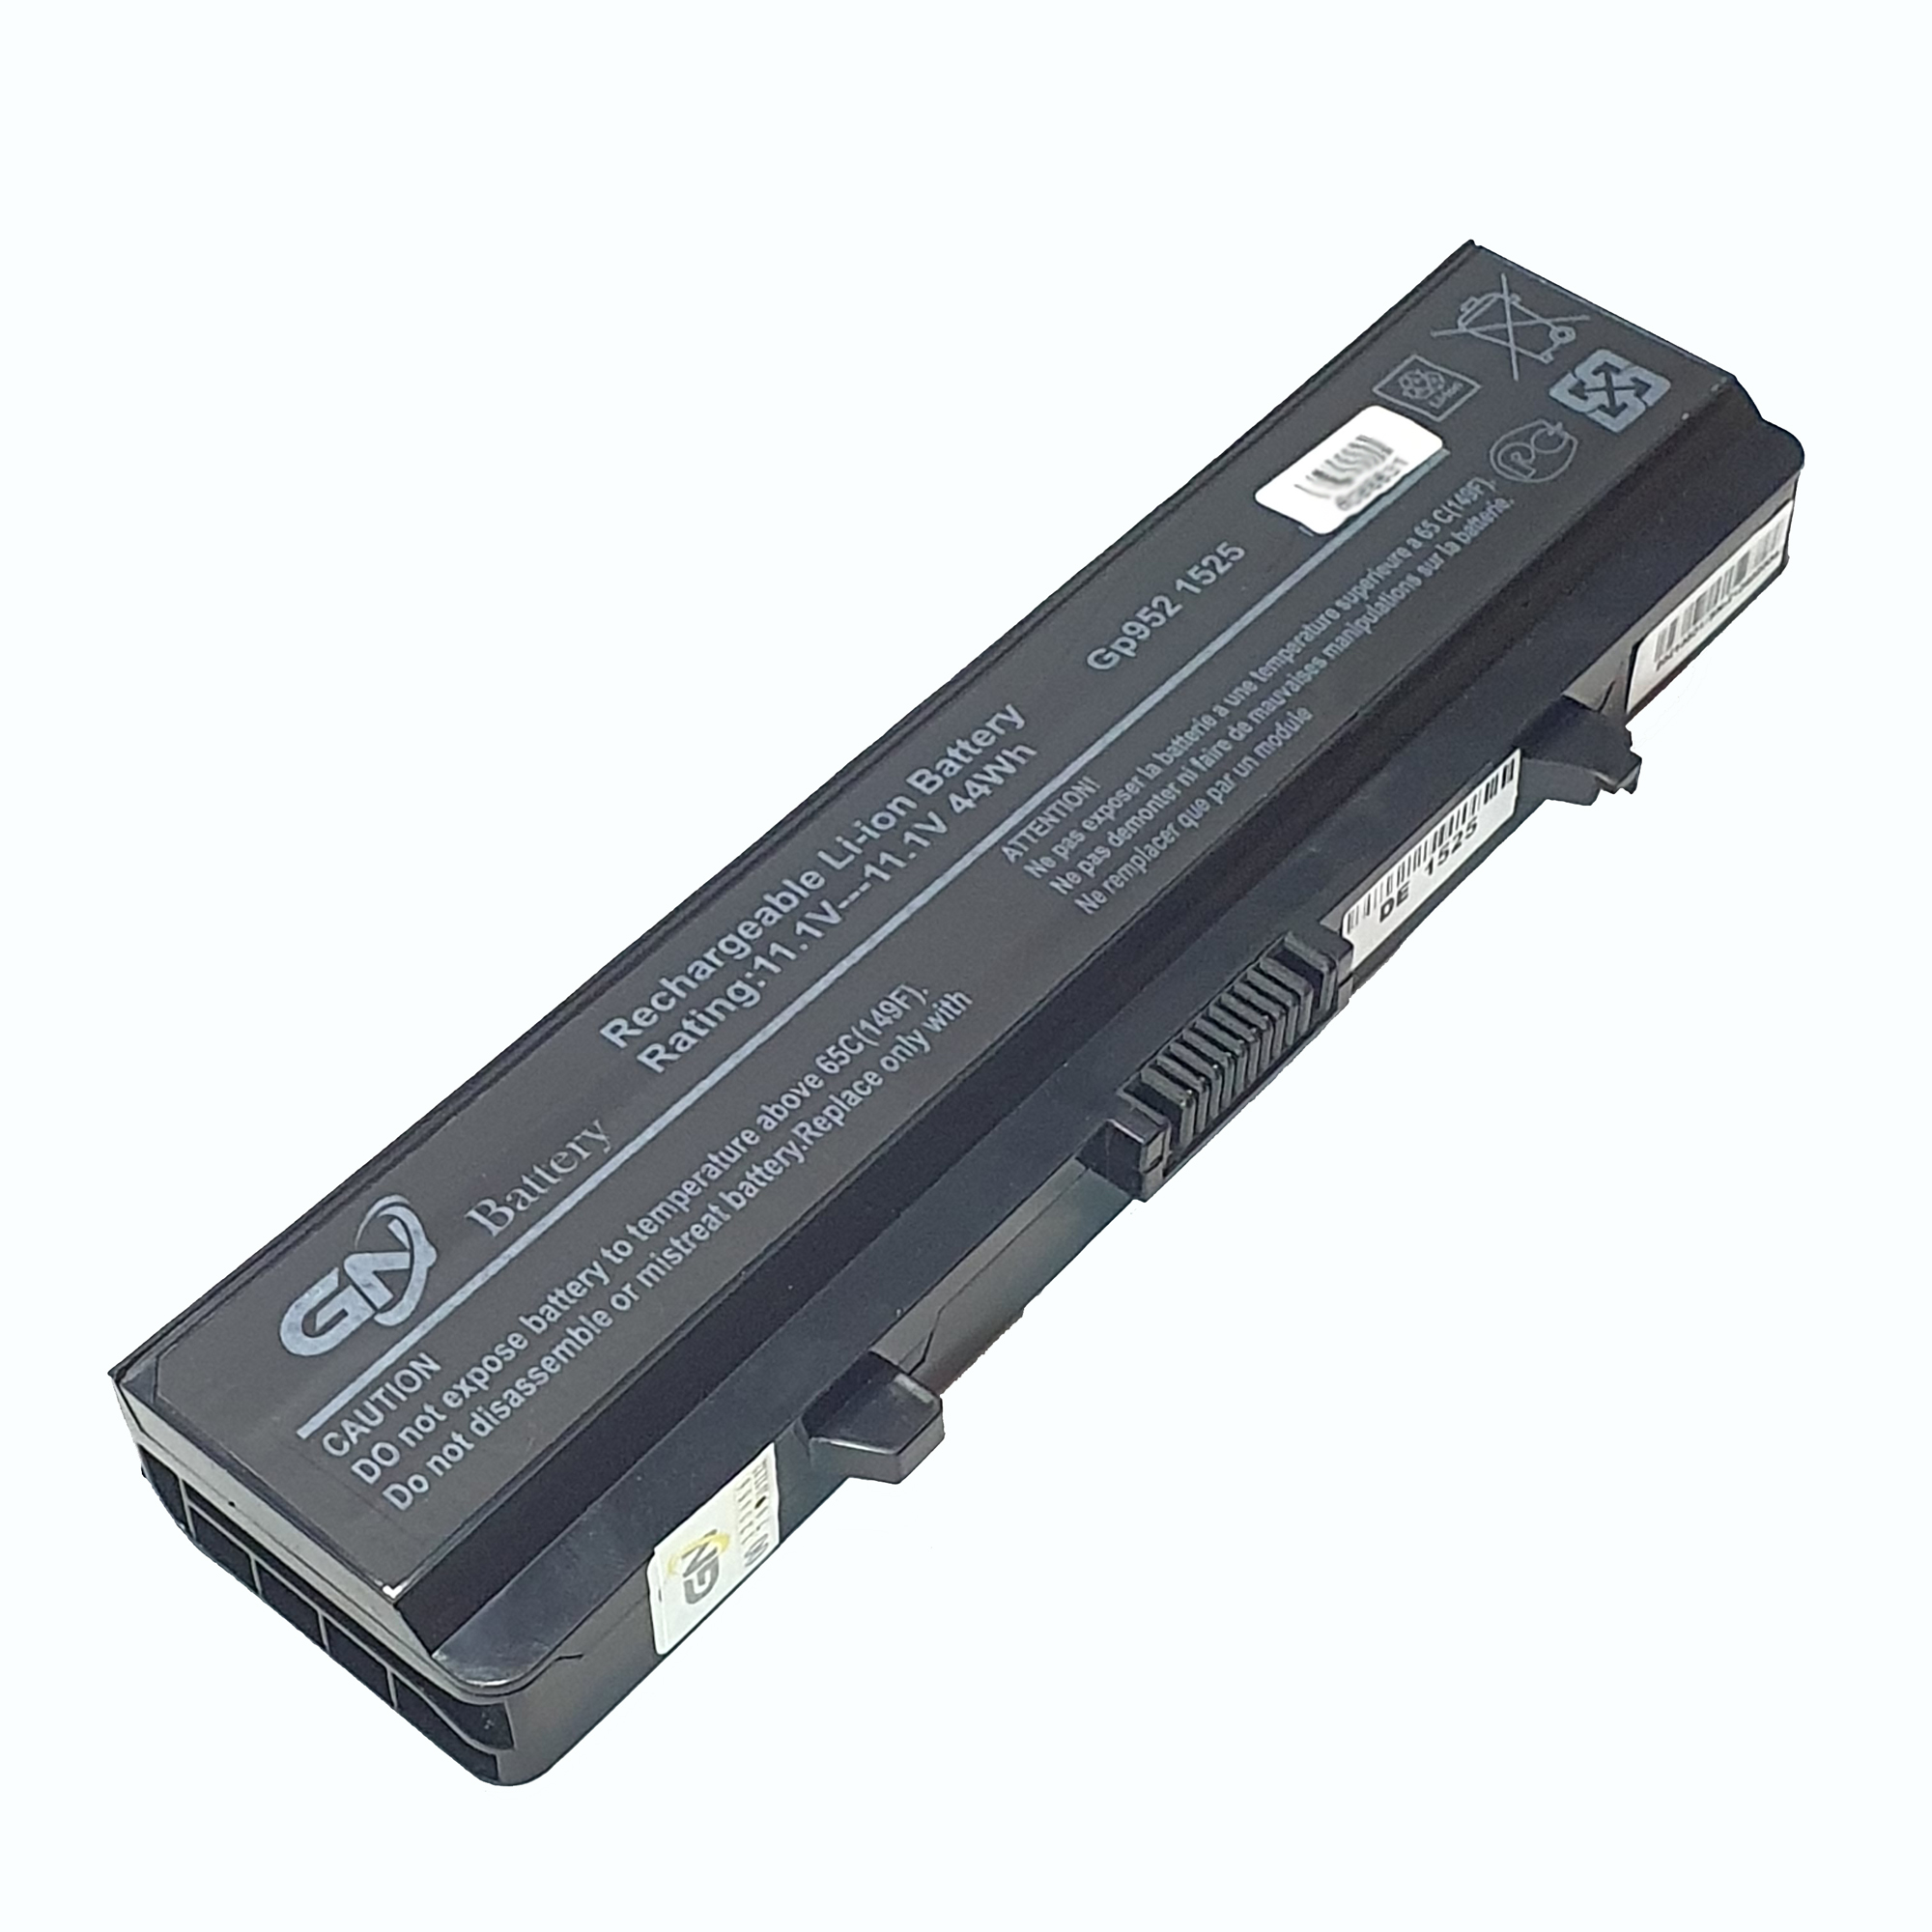 باتری لپ تاپ 6 سلولی گلدن نوت بوک دل 1525 مناسب برای لپ تاپ دل 1525/1545/1526/1546/1440/1750